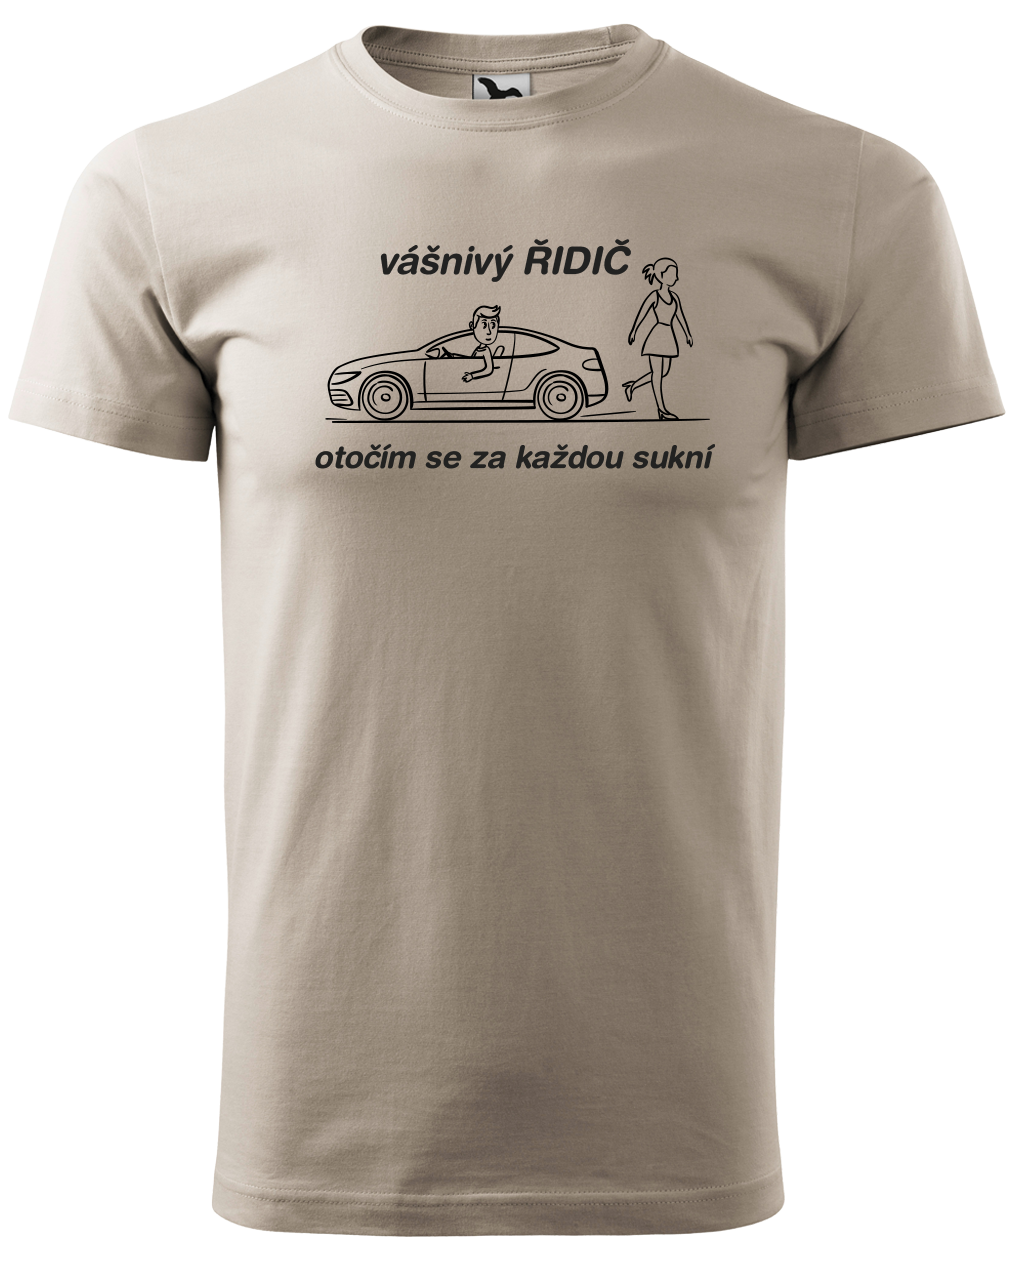 Vtipné tričko pro řidiče - Vášnivý řidič Velikost: S, Barva: Ledově šedá (51)